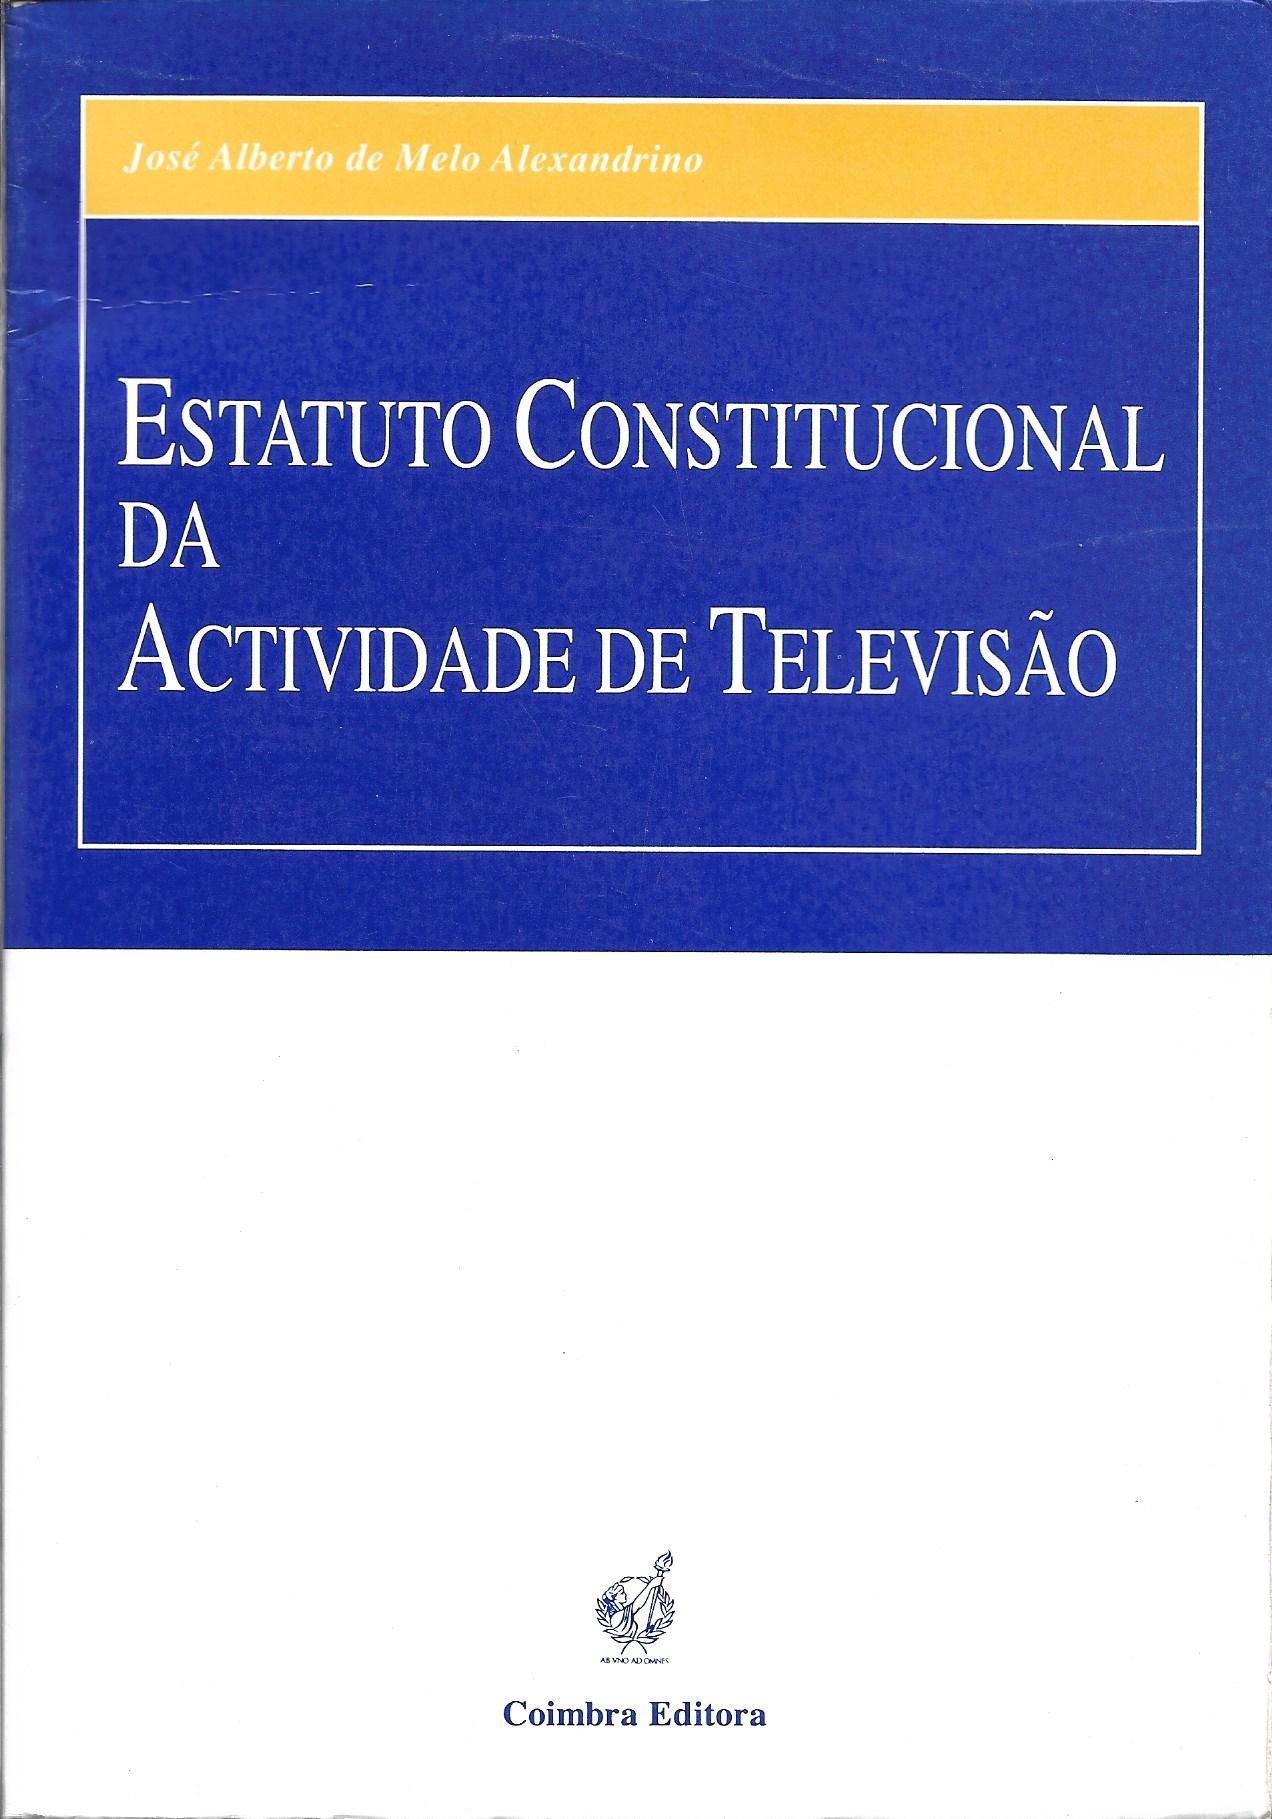 Estatuto Constitucional da Actividade de Televisão